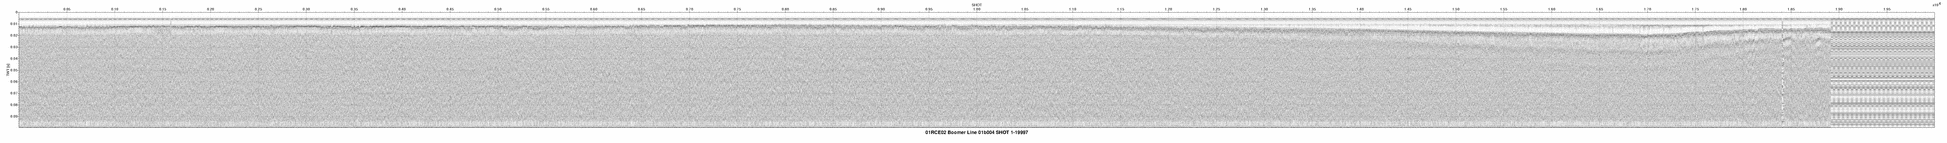 01RCE02-01b004 seismic profile thumbnail